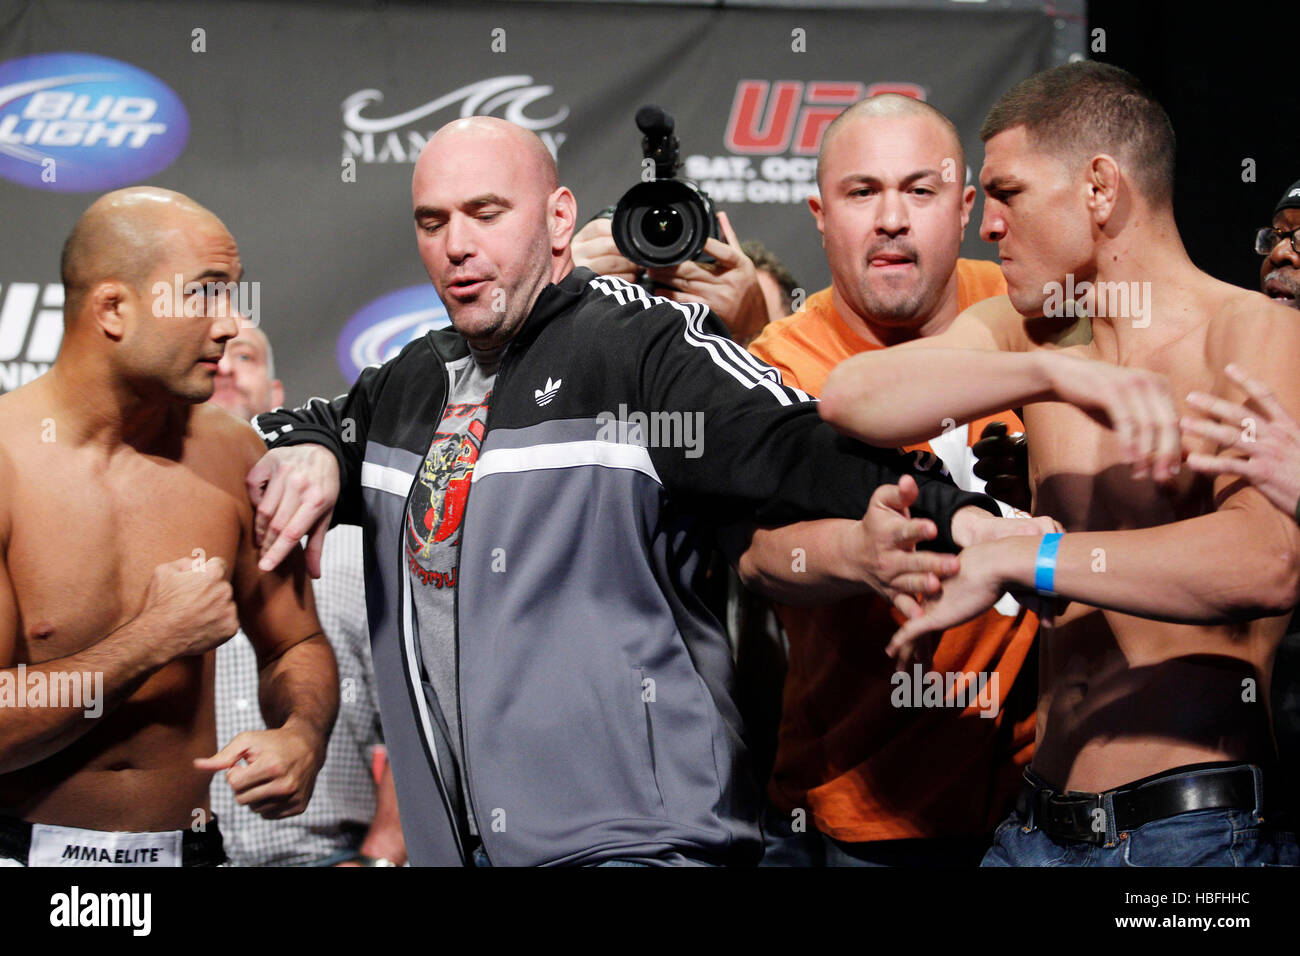 UFC-Kämpfer Nick Diaz, rechts und links, BJ Penn ist getrennt von UFC-Präsident Dana White während einer wiegen für UFC 137 in Las Vegas, Nevada auf Freitag, 28. Oktober 2011. Foto von Francis Specker Stockfoto